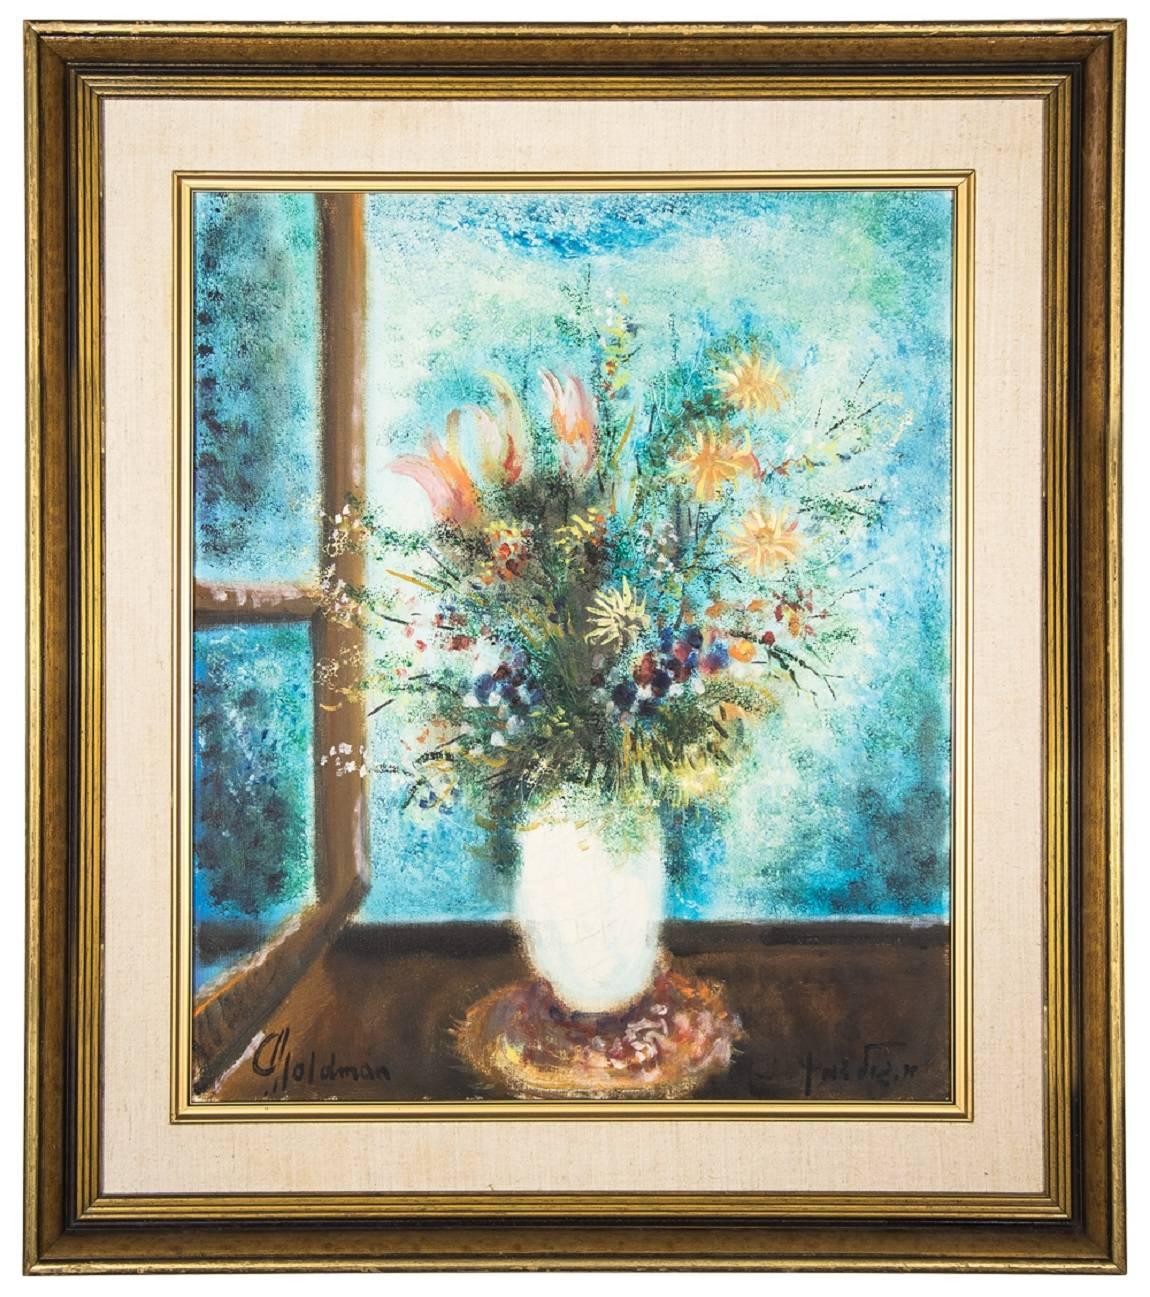 Vase mit Blumen, lebhaftes fauvistisches Ölgemälde des israelischen Künstlers Albert Goldman